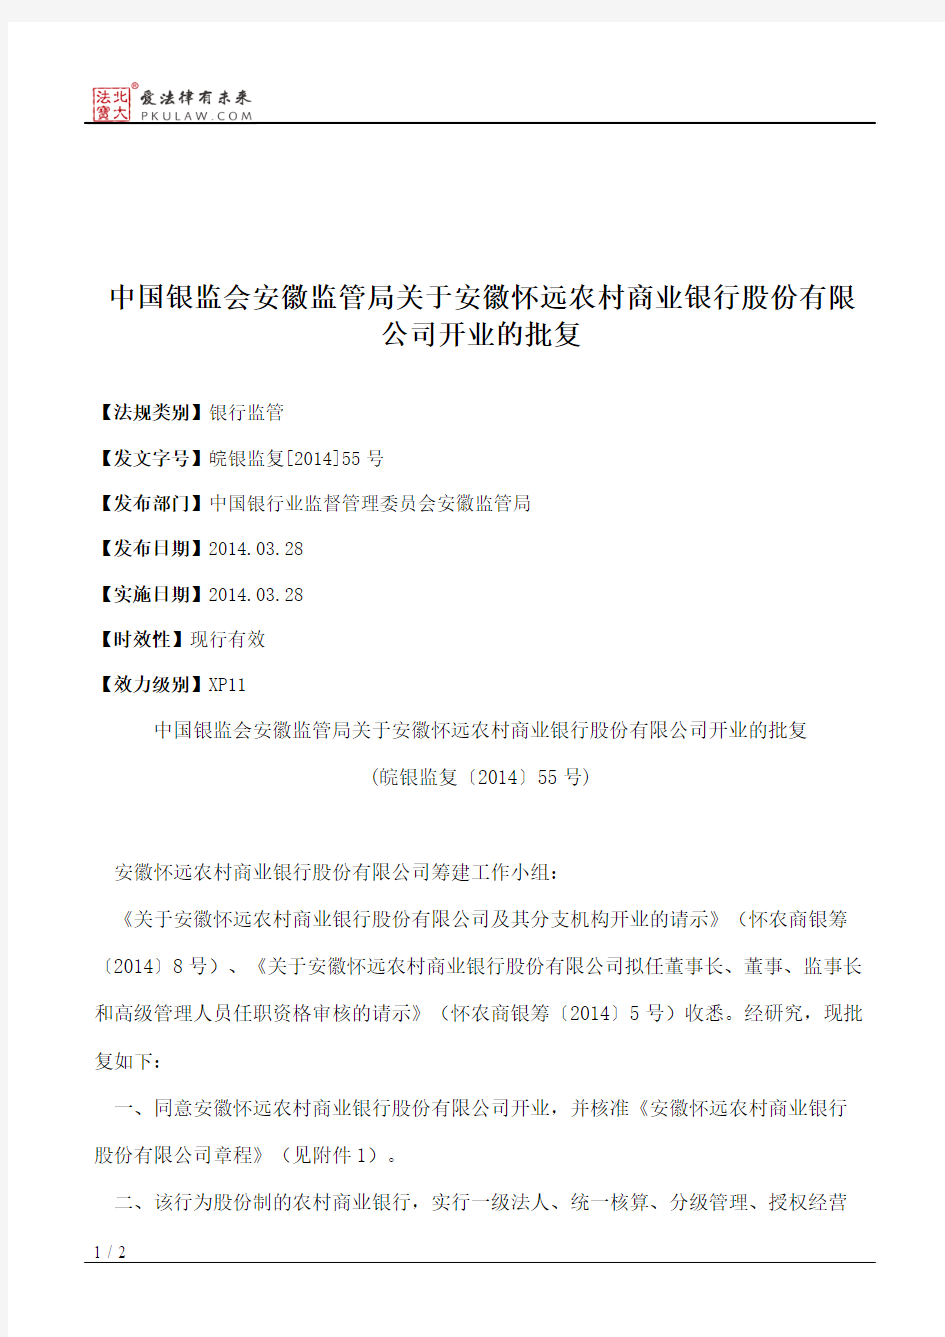 中国银监会安徽监管局关于安徽怀远农村商业银行股份有限公司开业的批复